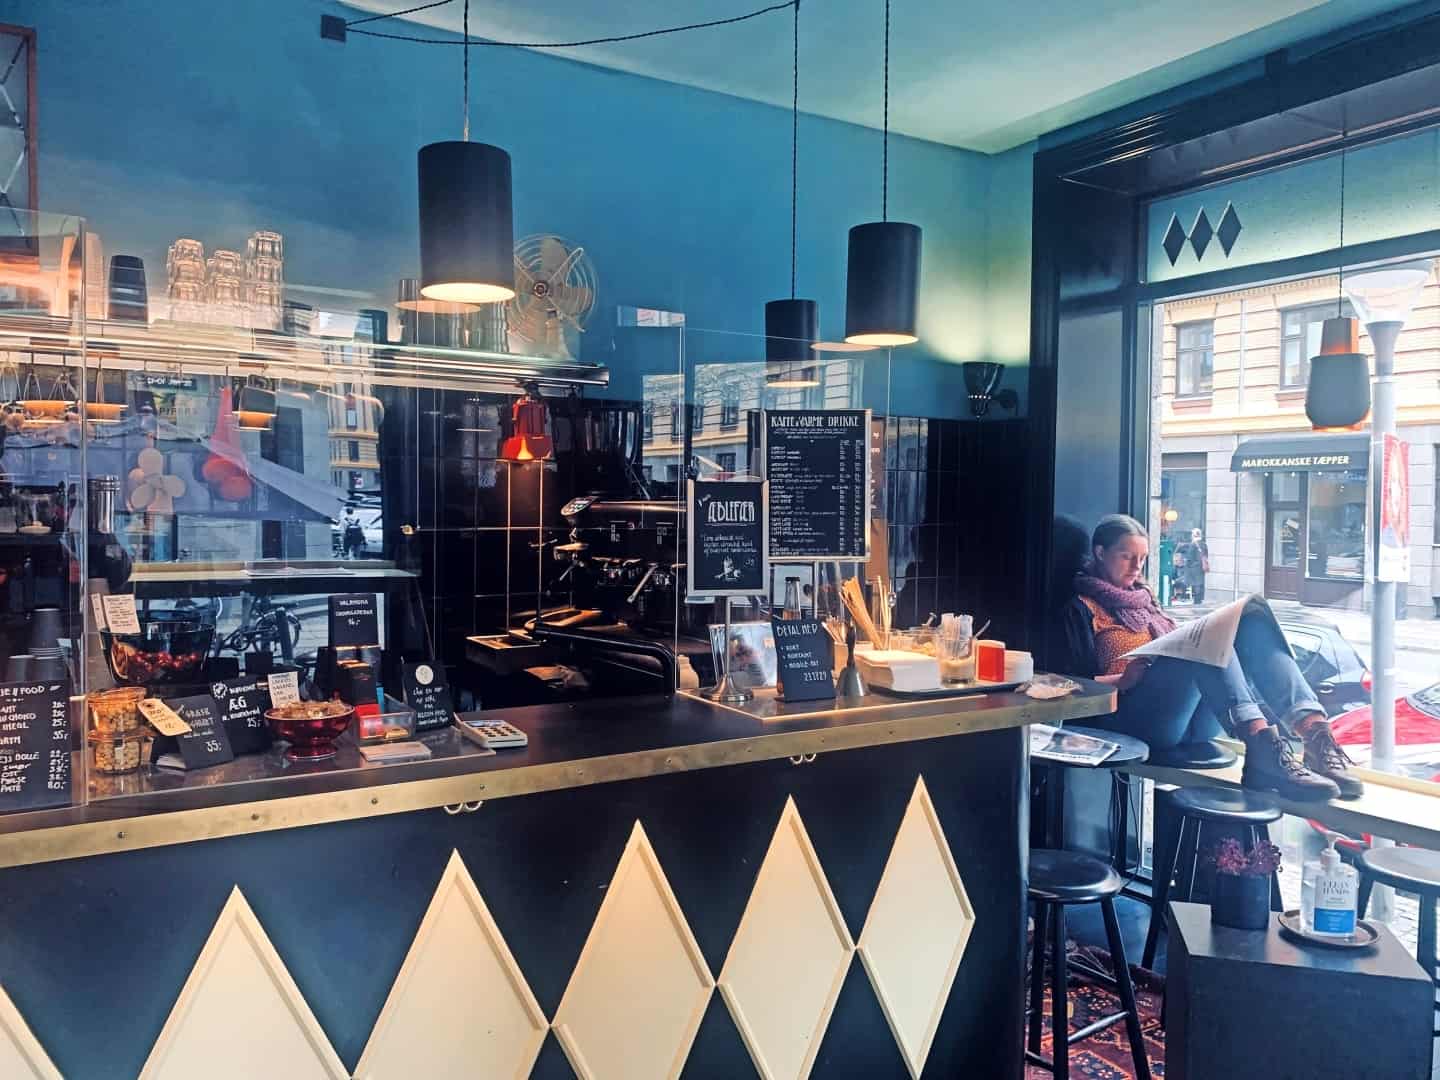 Kaffebar sælger særlige vinyler og serverer kaffe, ikke kan få steder | kobenhavnliv.dk